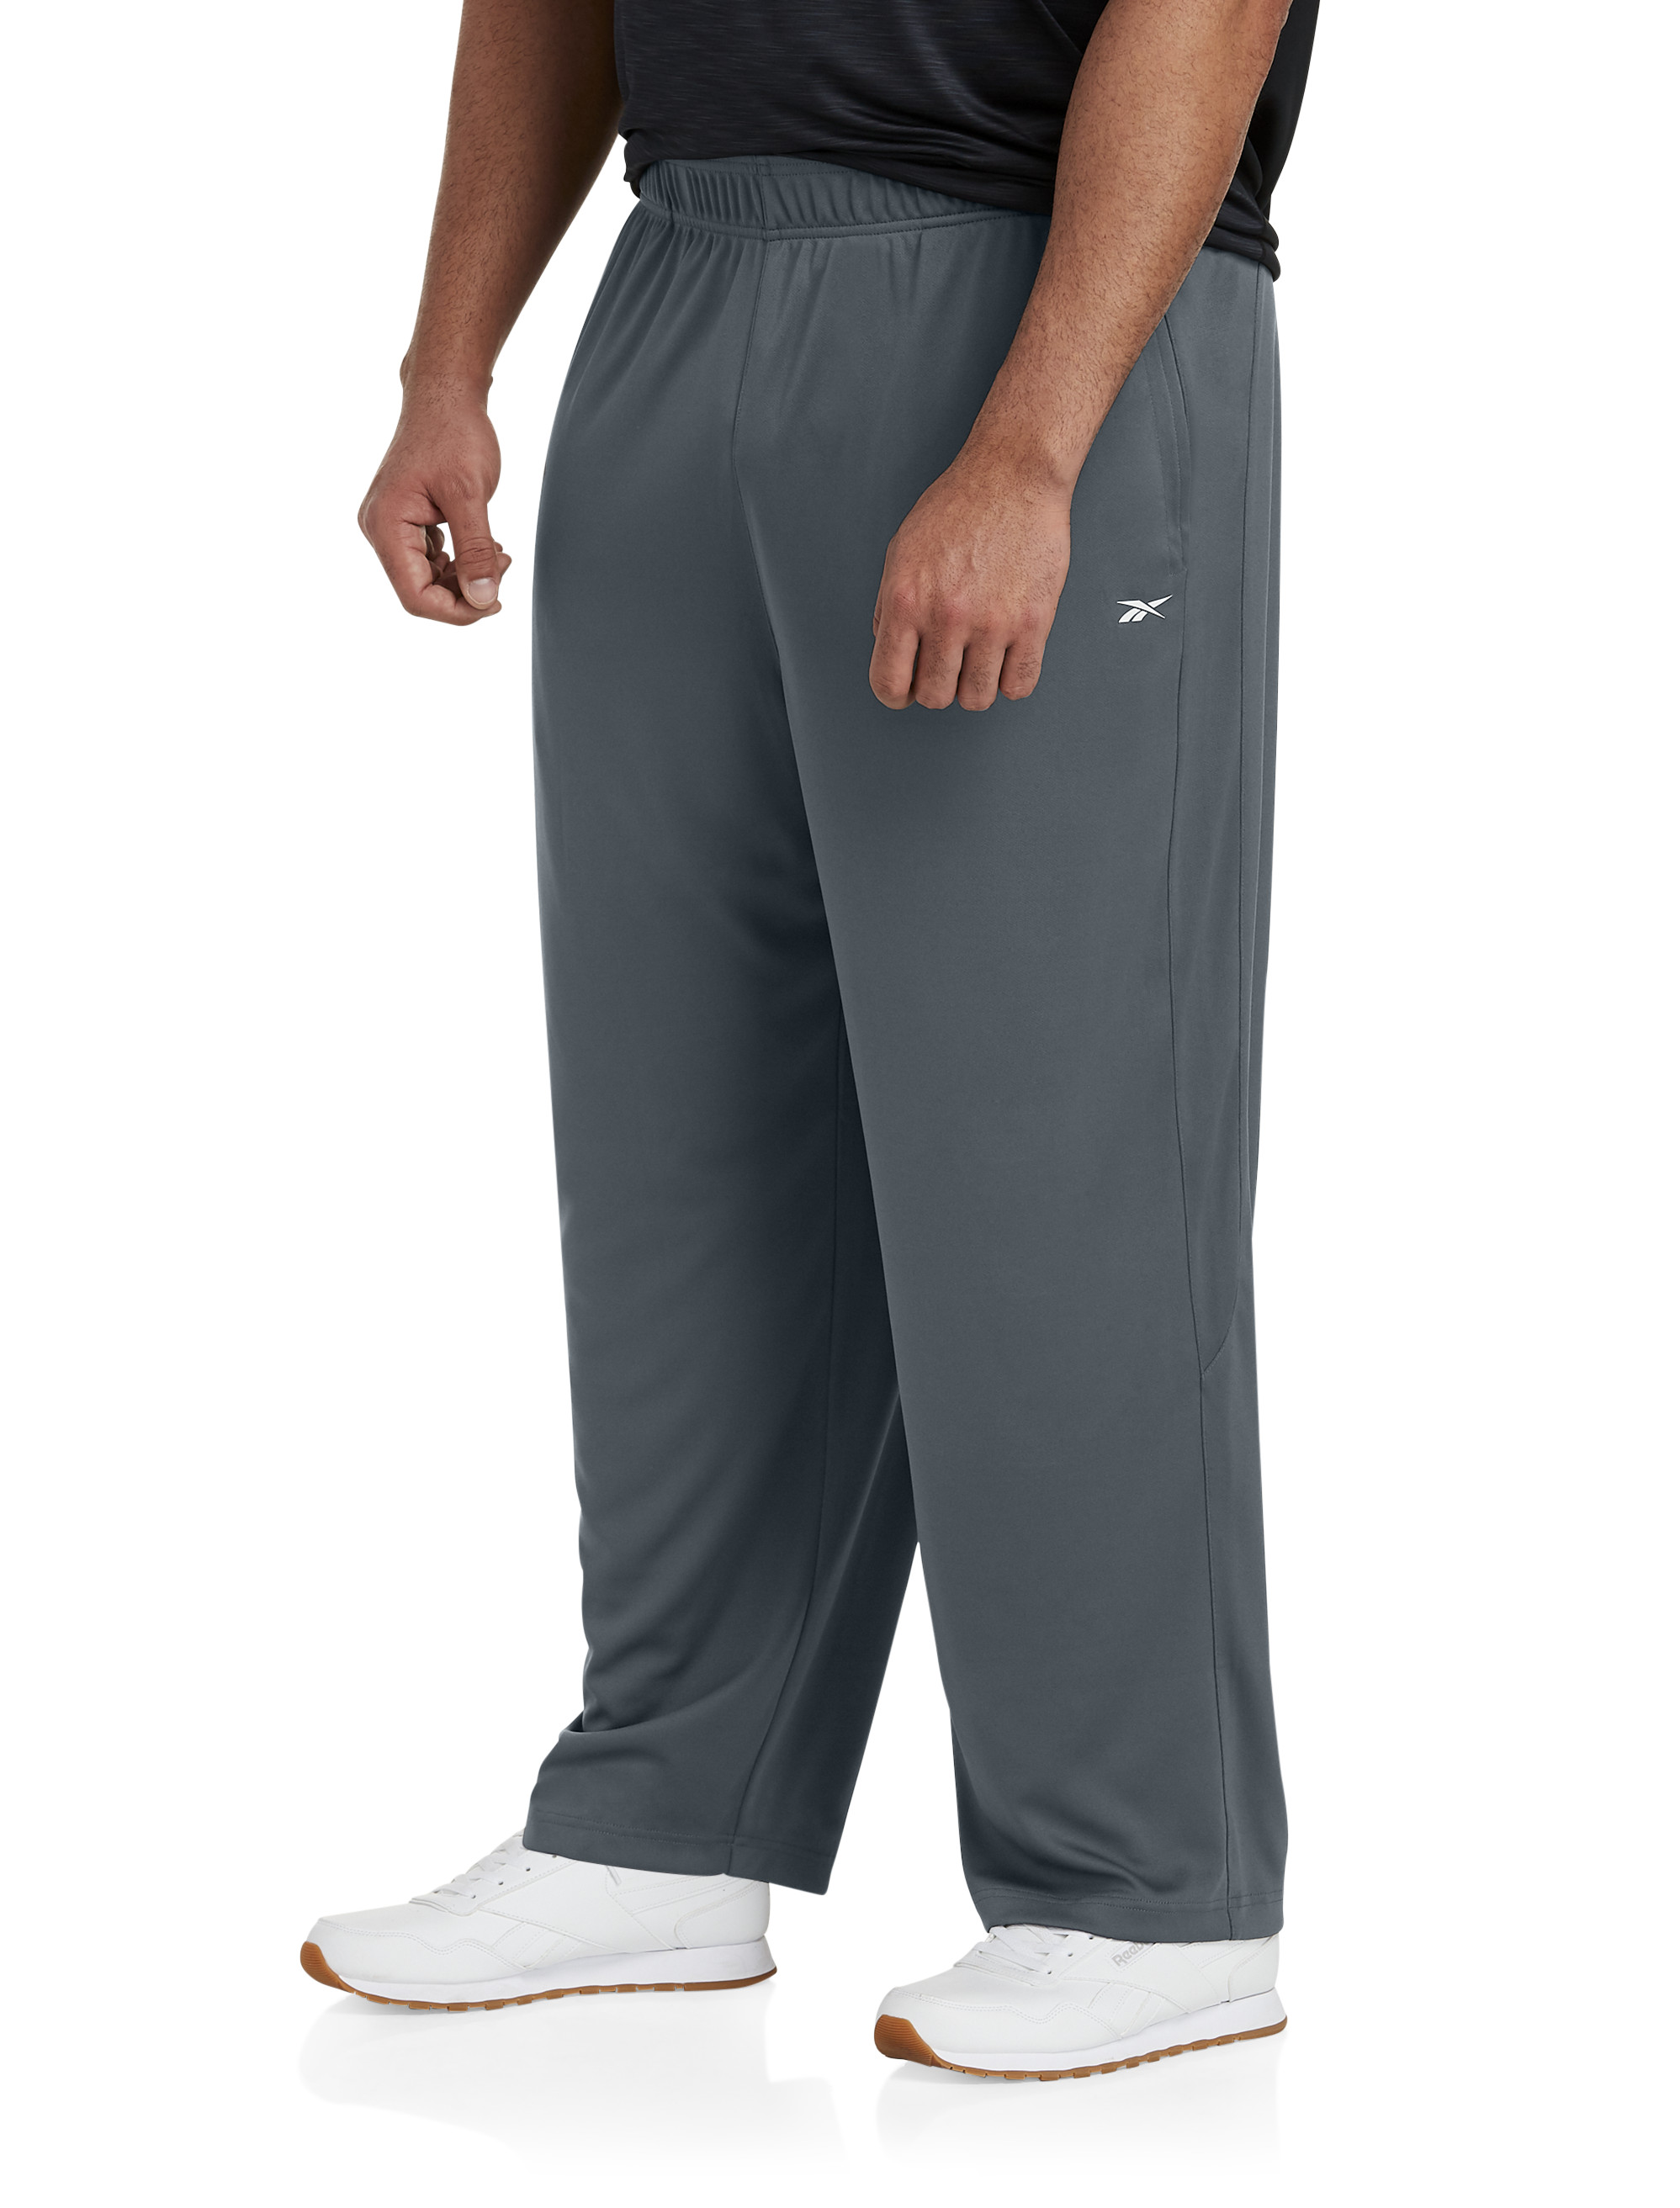 Zelos Performance Sleep Pants Drawstring Elastic Waistband Pockets Men’s XL